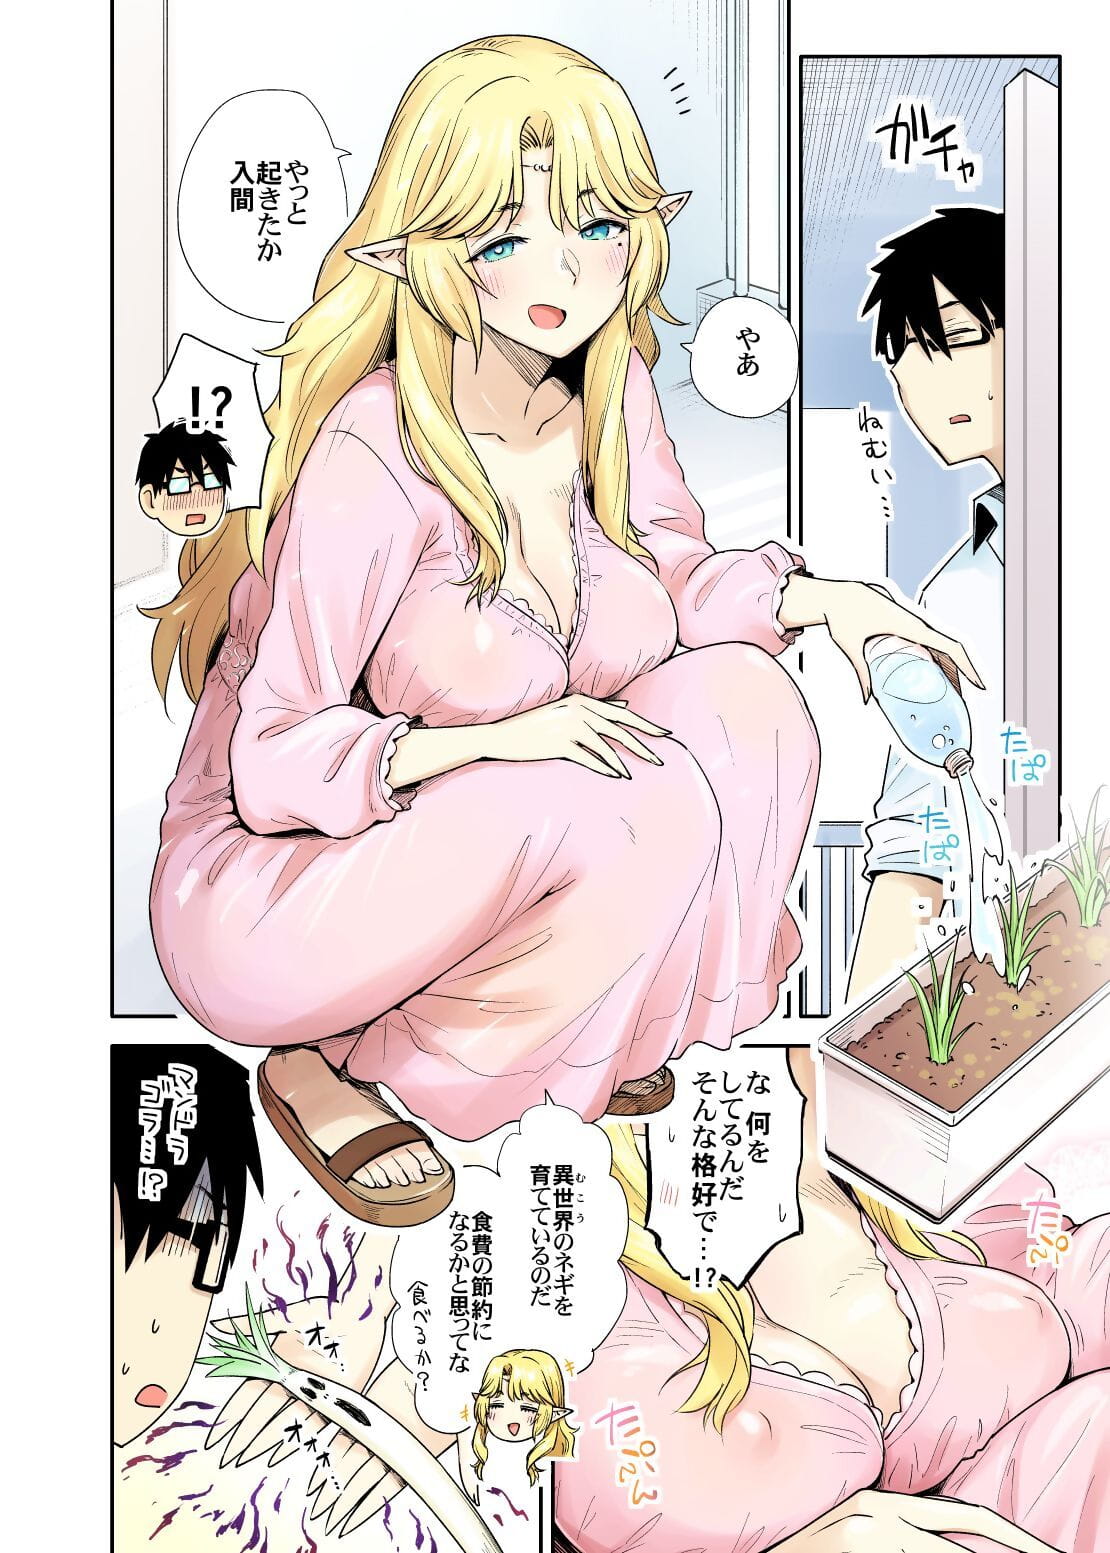 Rinjin Elf Manga page 1